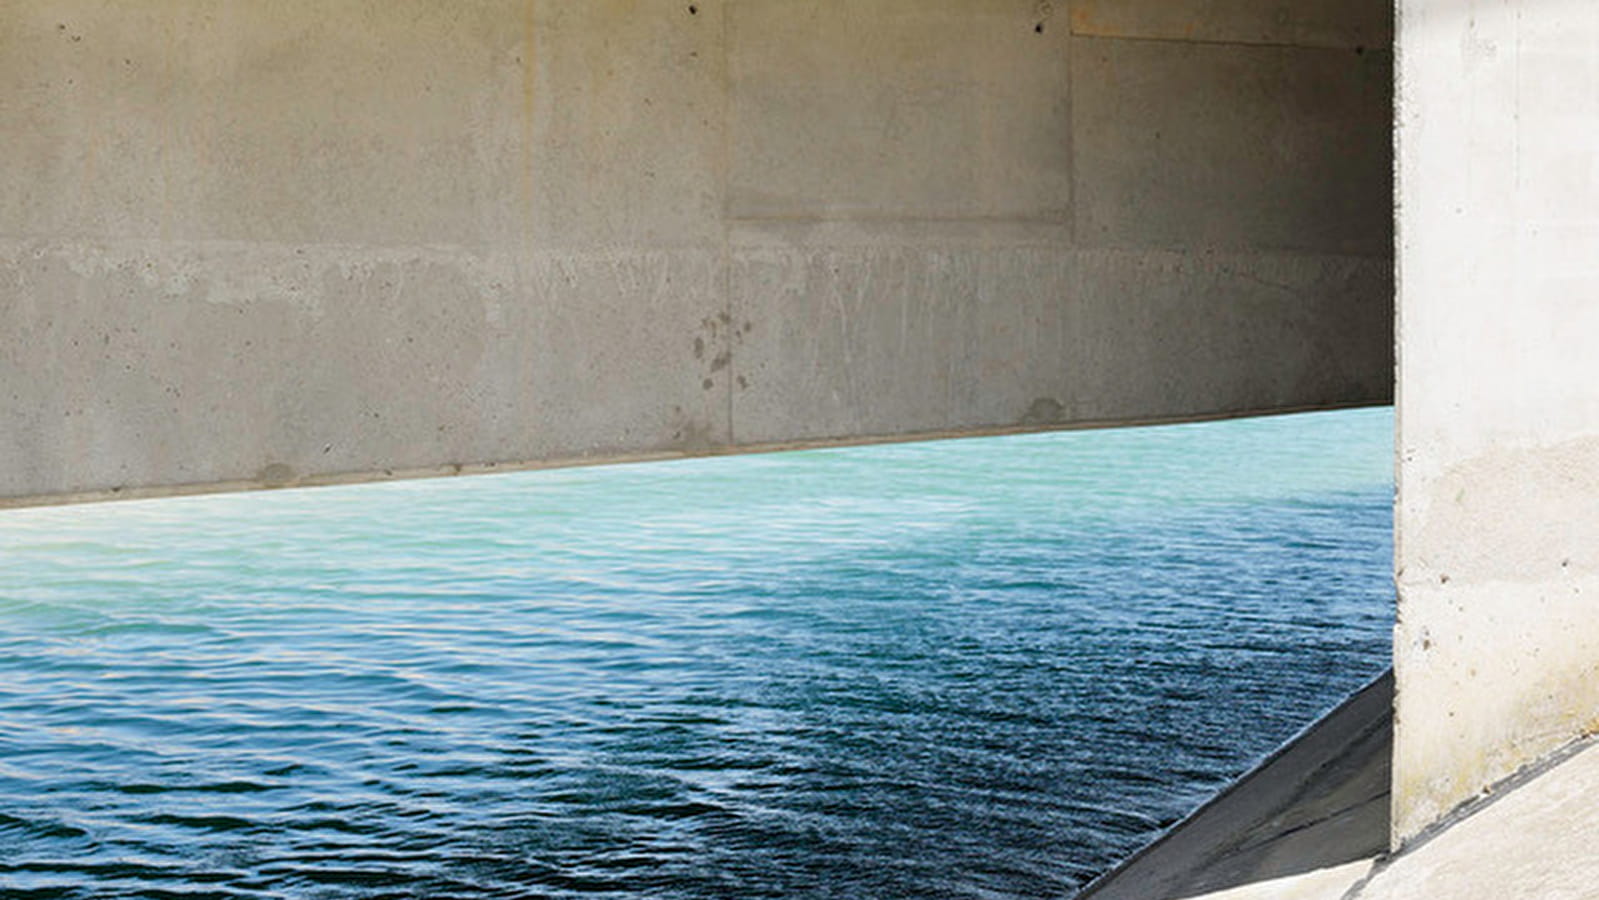 Hudros, aus Wasser und Beton - Fotografien von Patrick Rimond